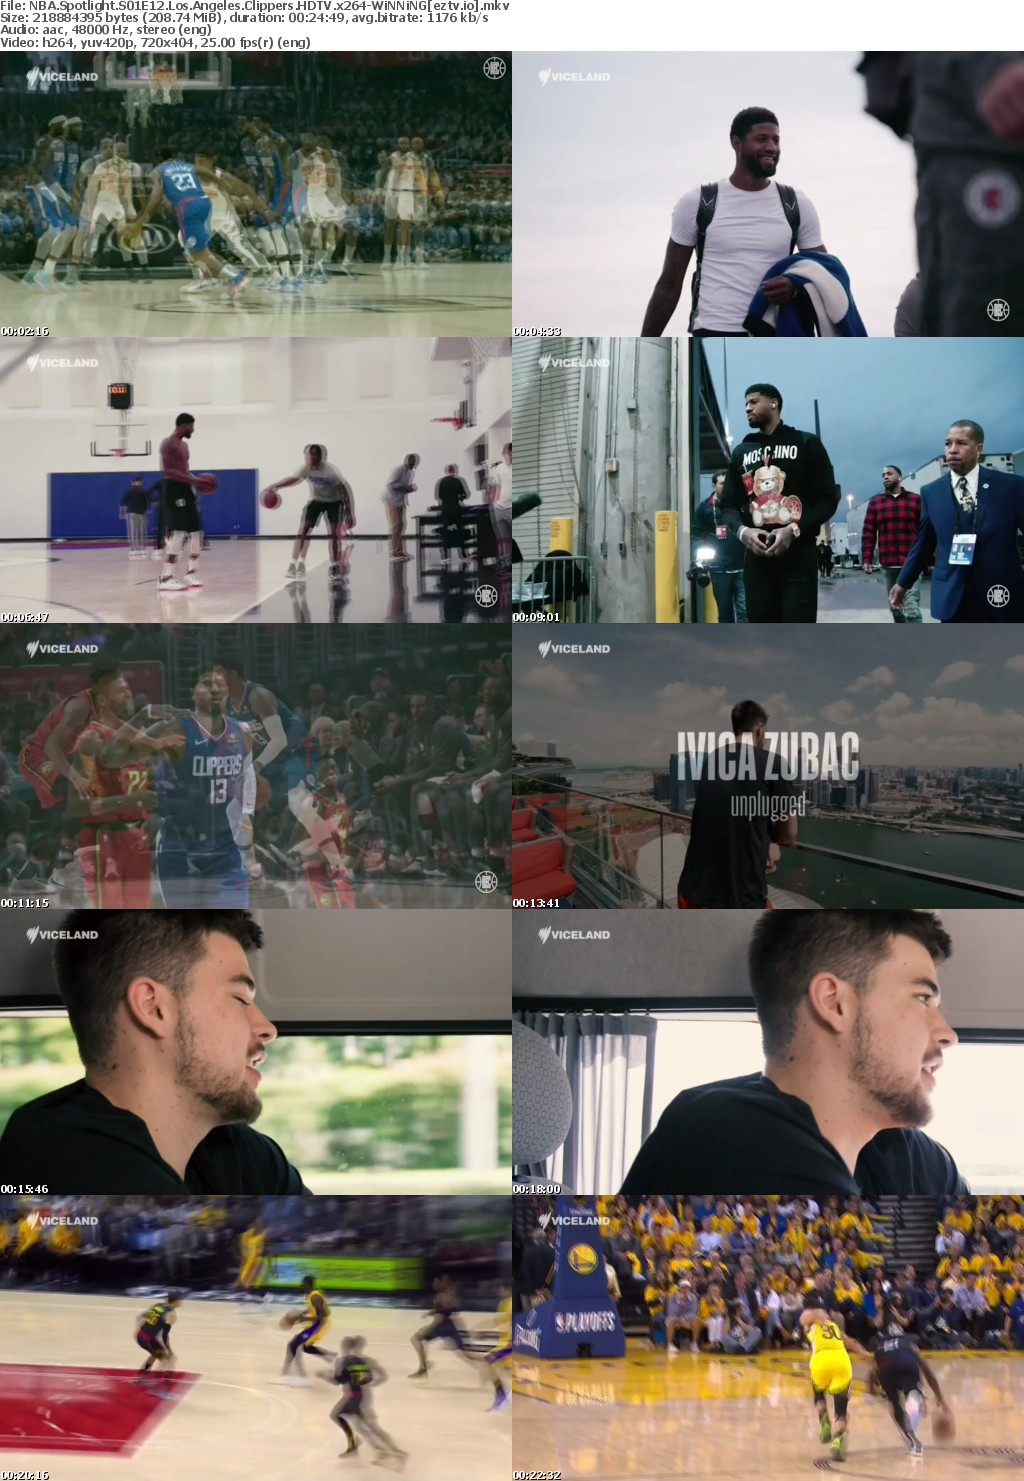 NBA Spotlight S01E12 Los Angeles Clippers HDTV x264-WiNNiNG